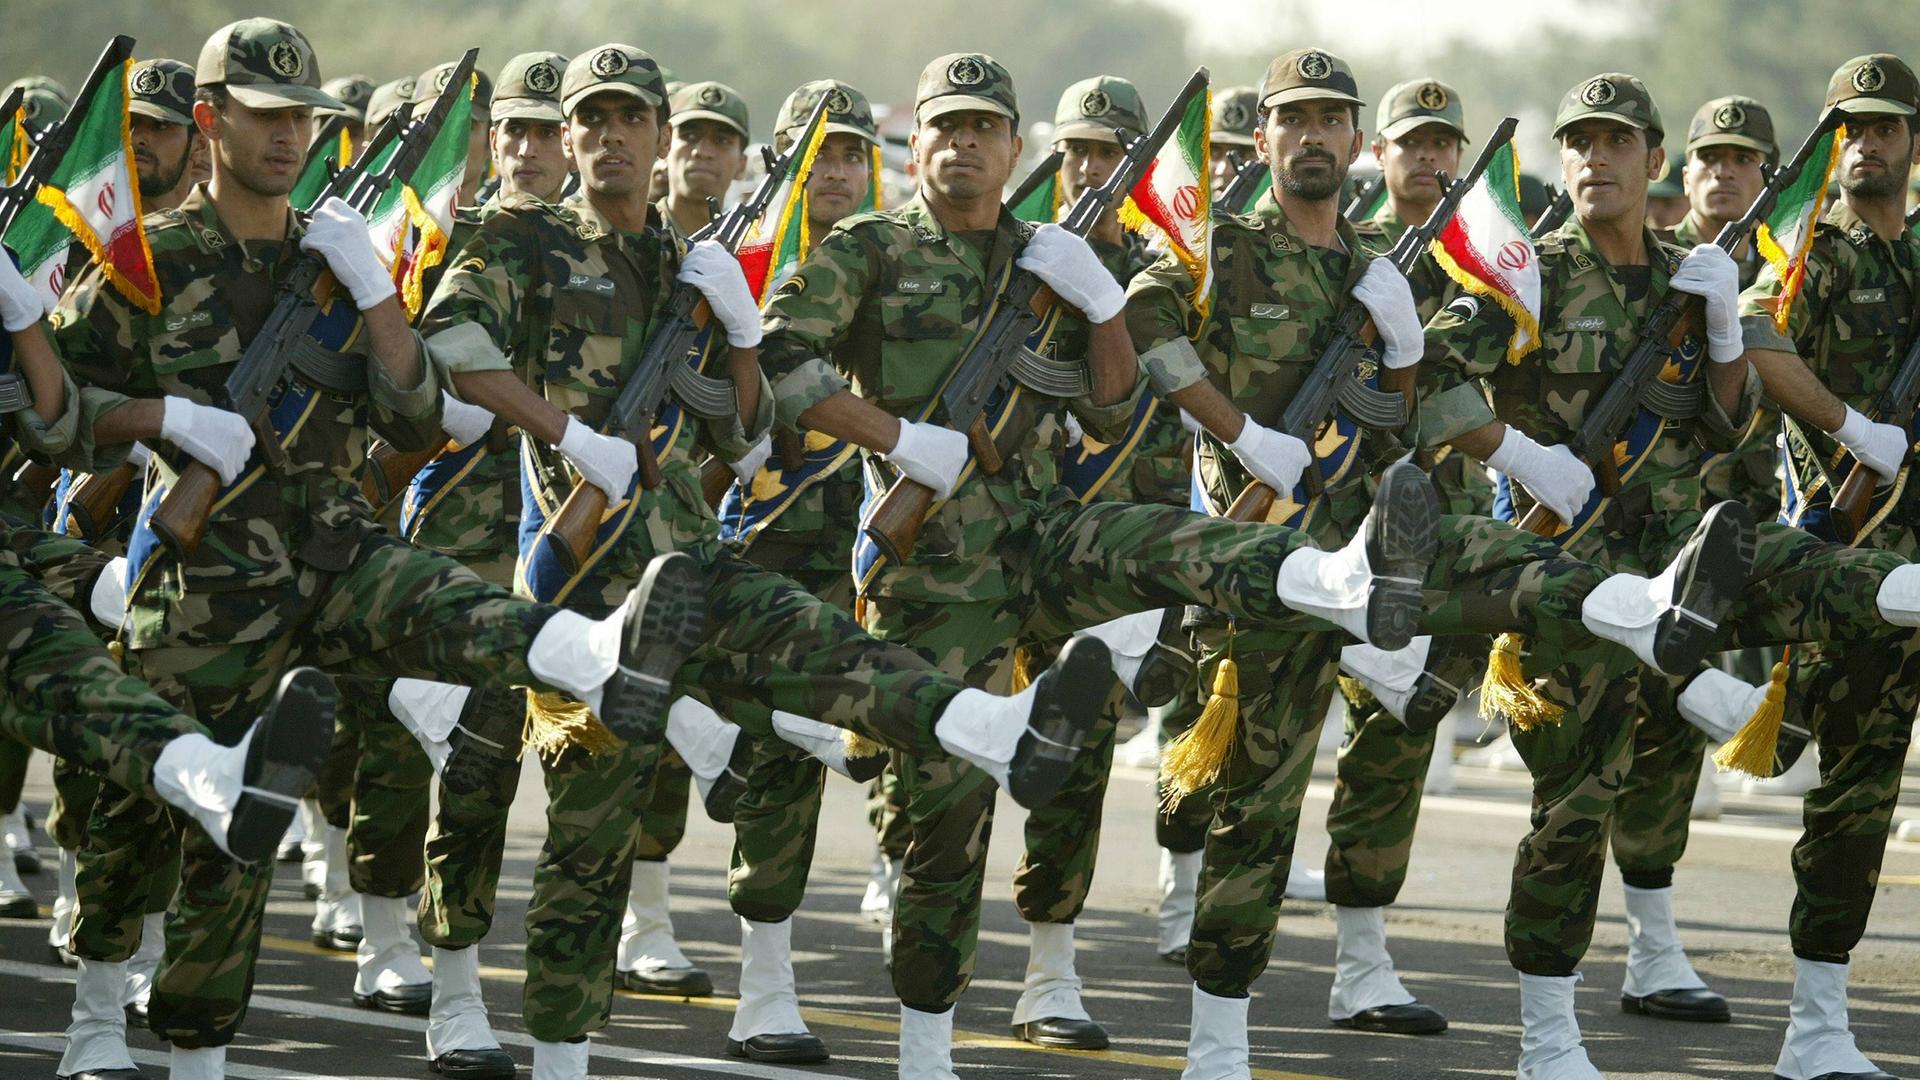 Soldaten der Iranischen Revolutionsgarde während einer Militärparade (Archivfoto)